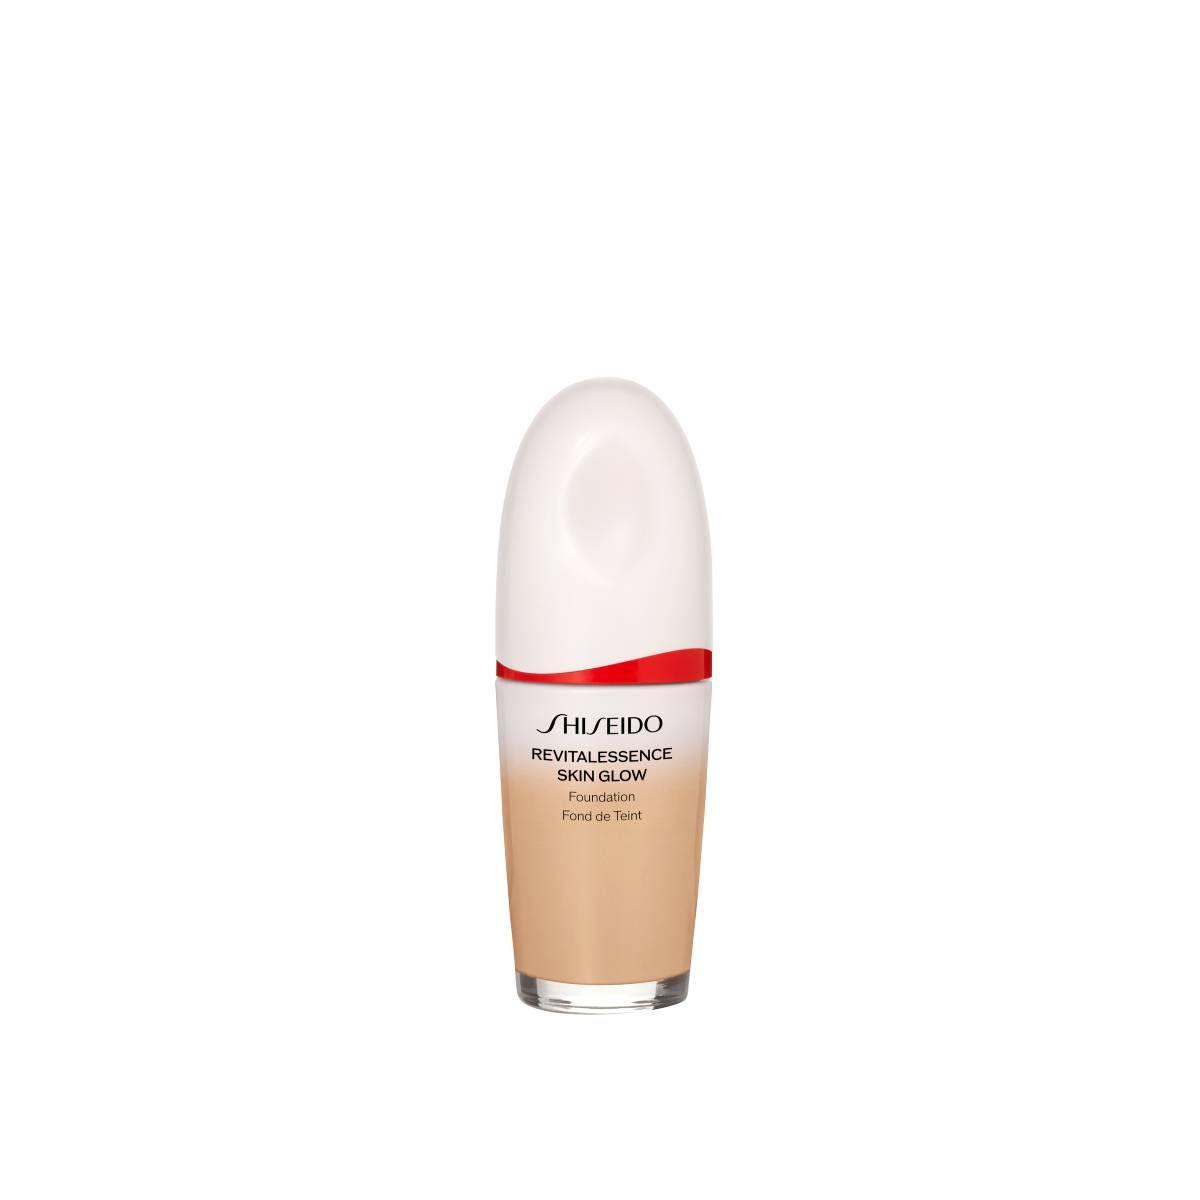 Revitalessence skin glow SPF30 PA+++, de Shiseido